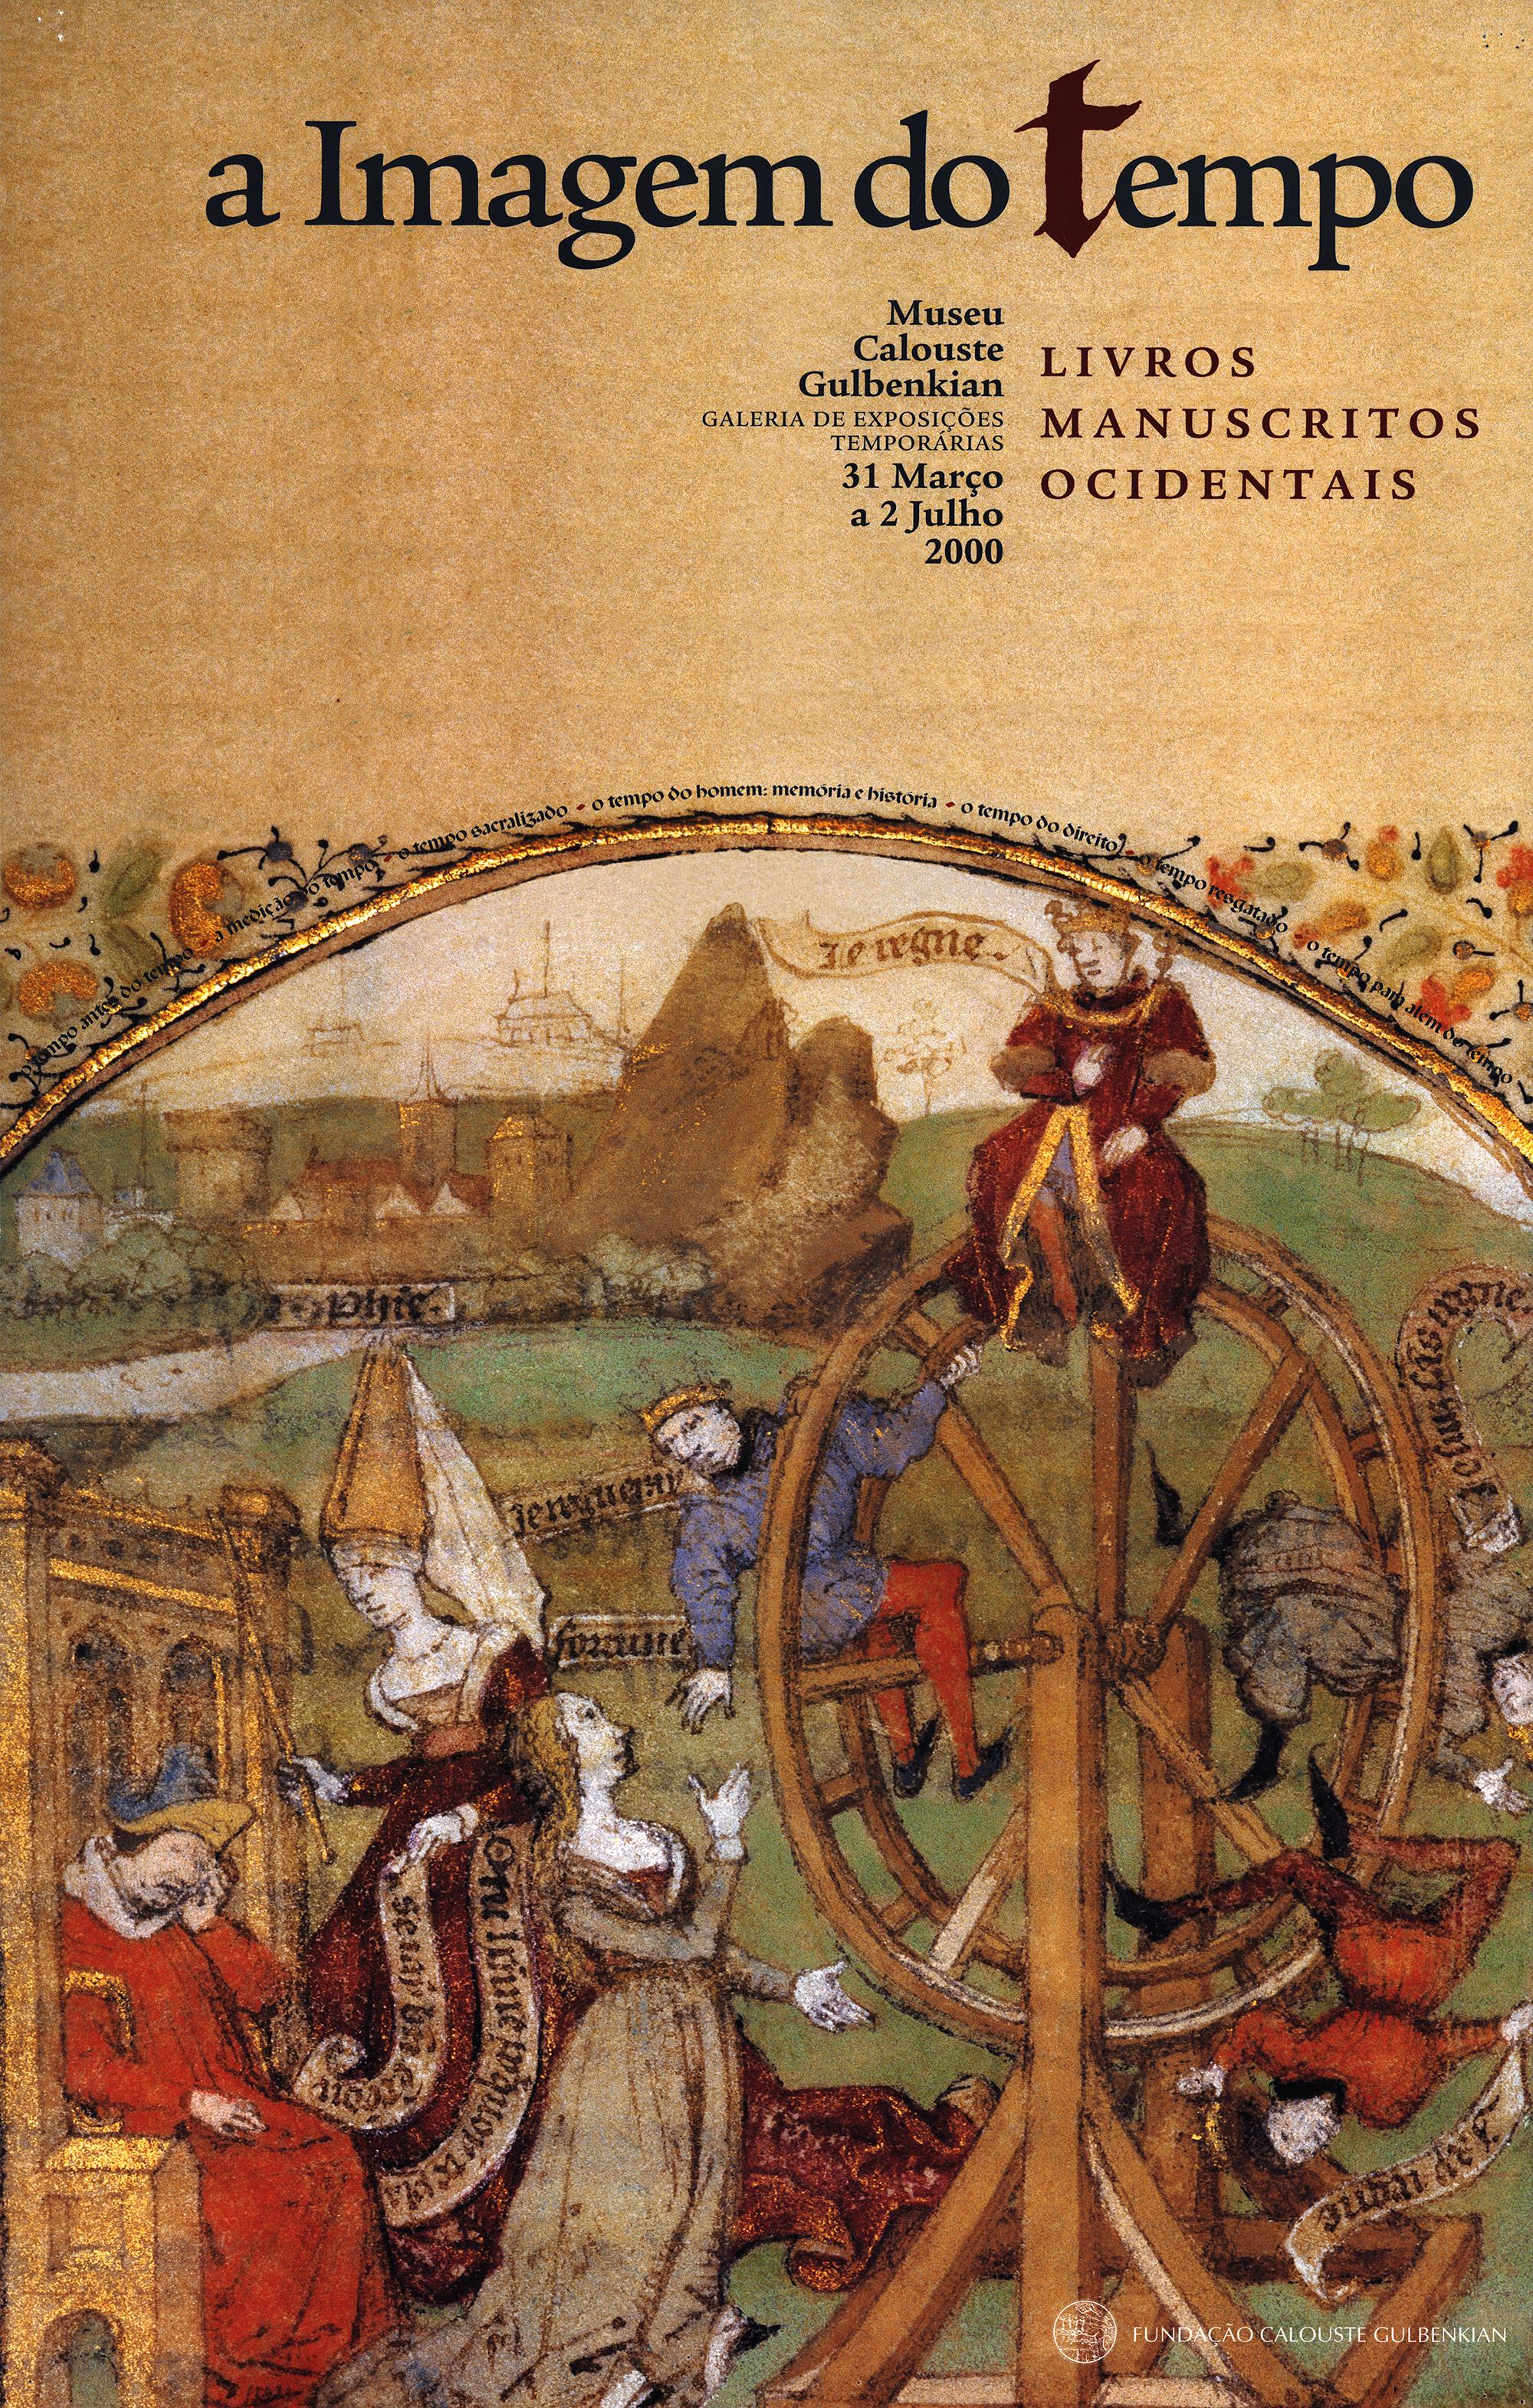 A Imagem do Tempo. Livros Manuscritos Ocidentais